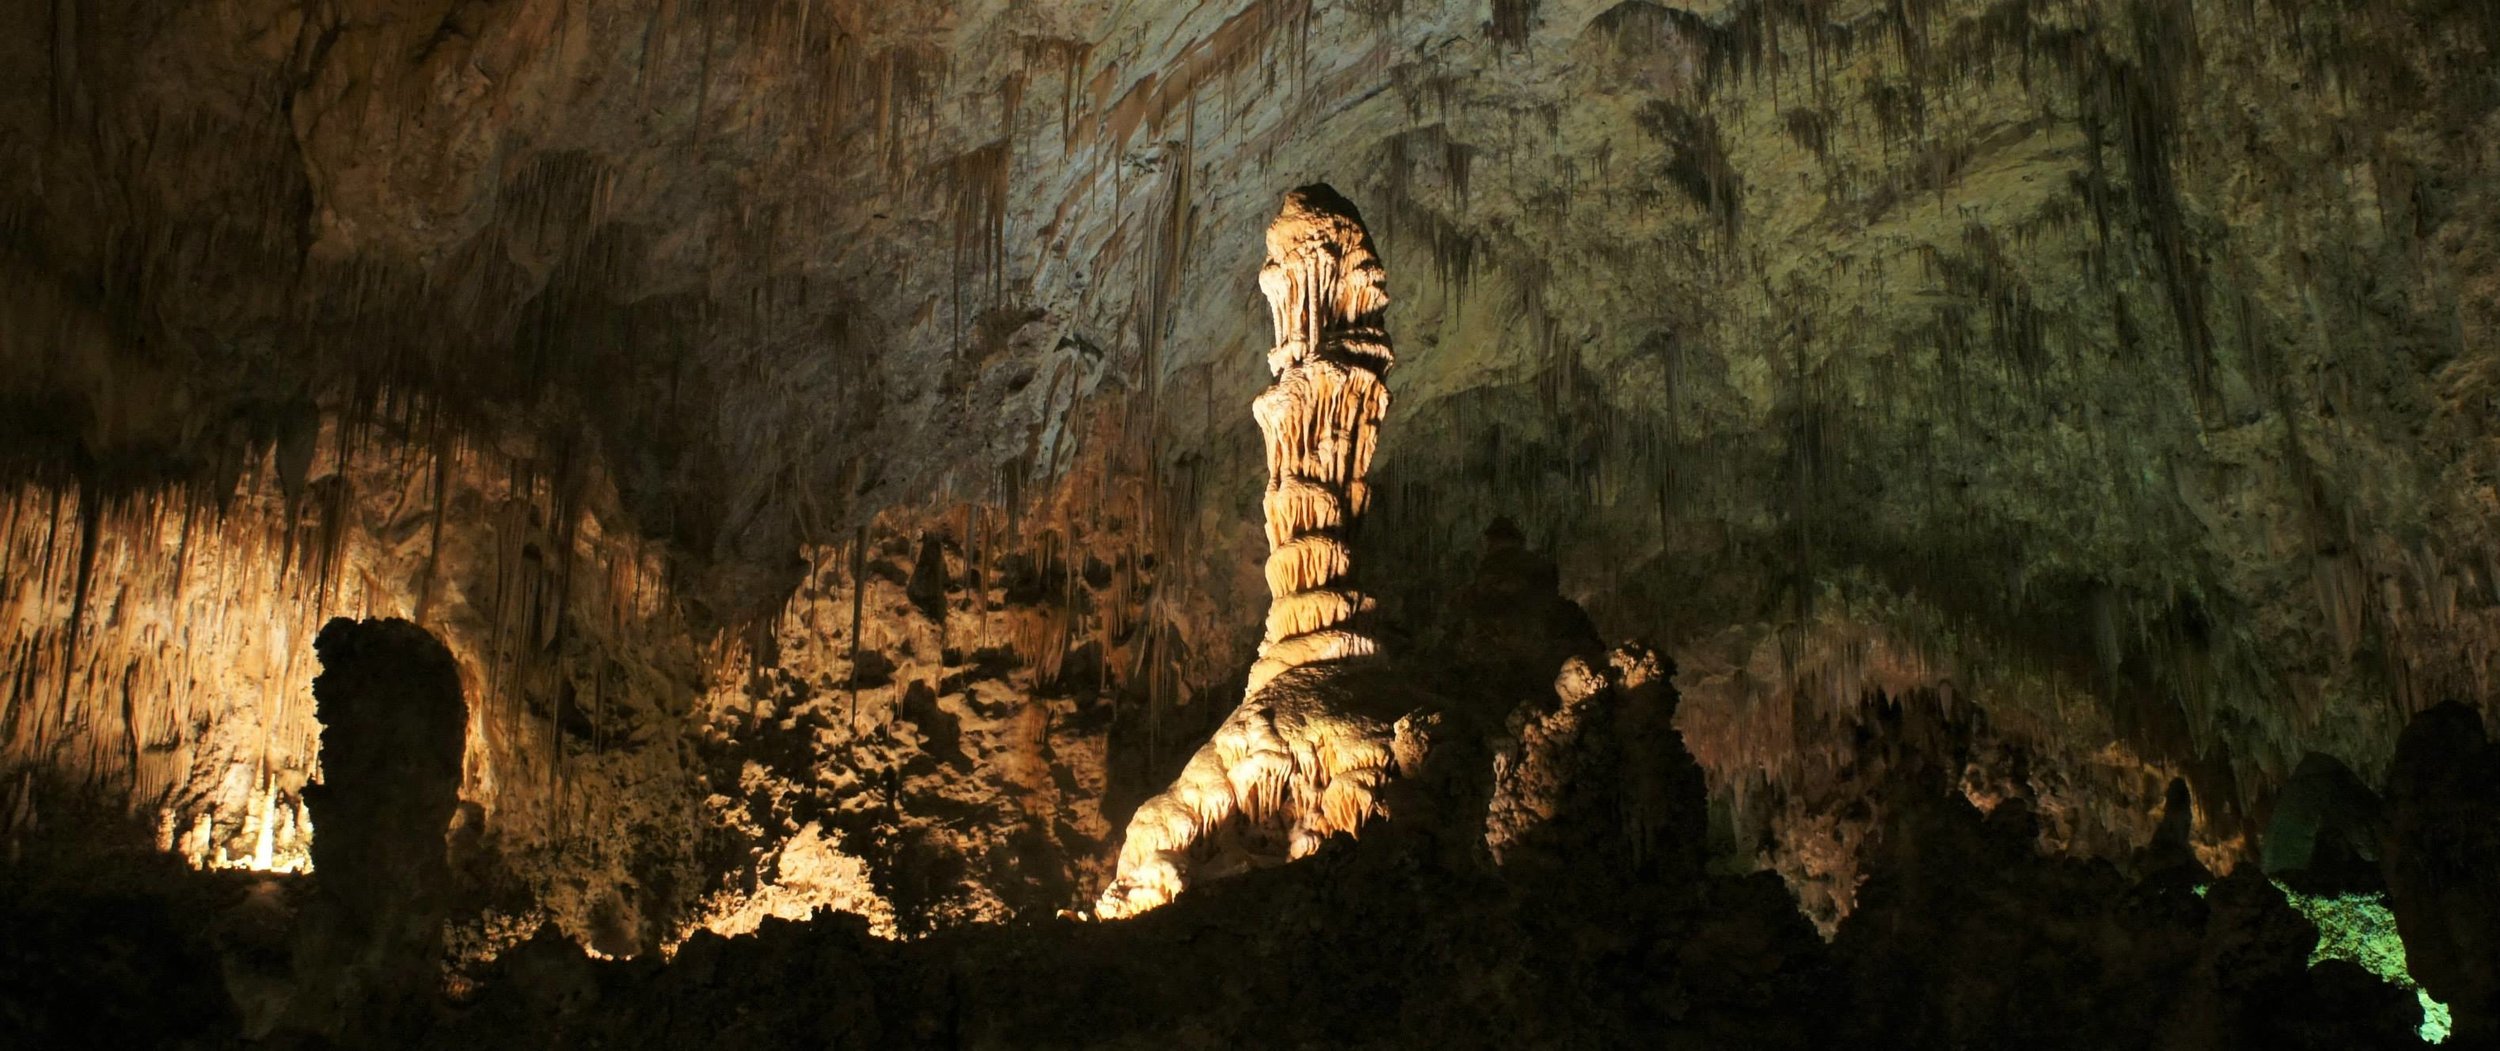 Illumination within the Cavern